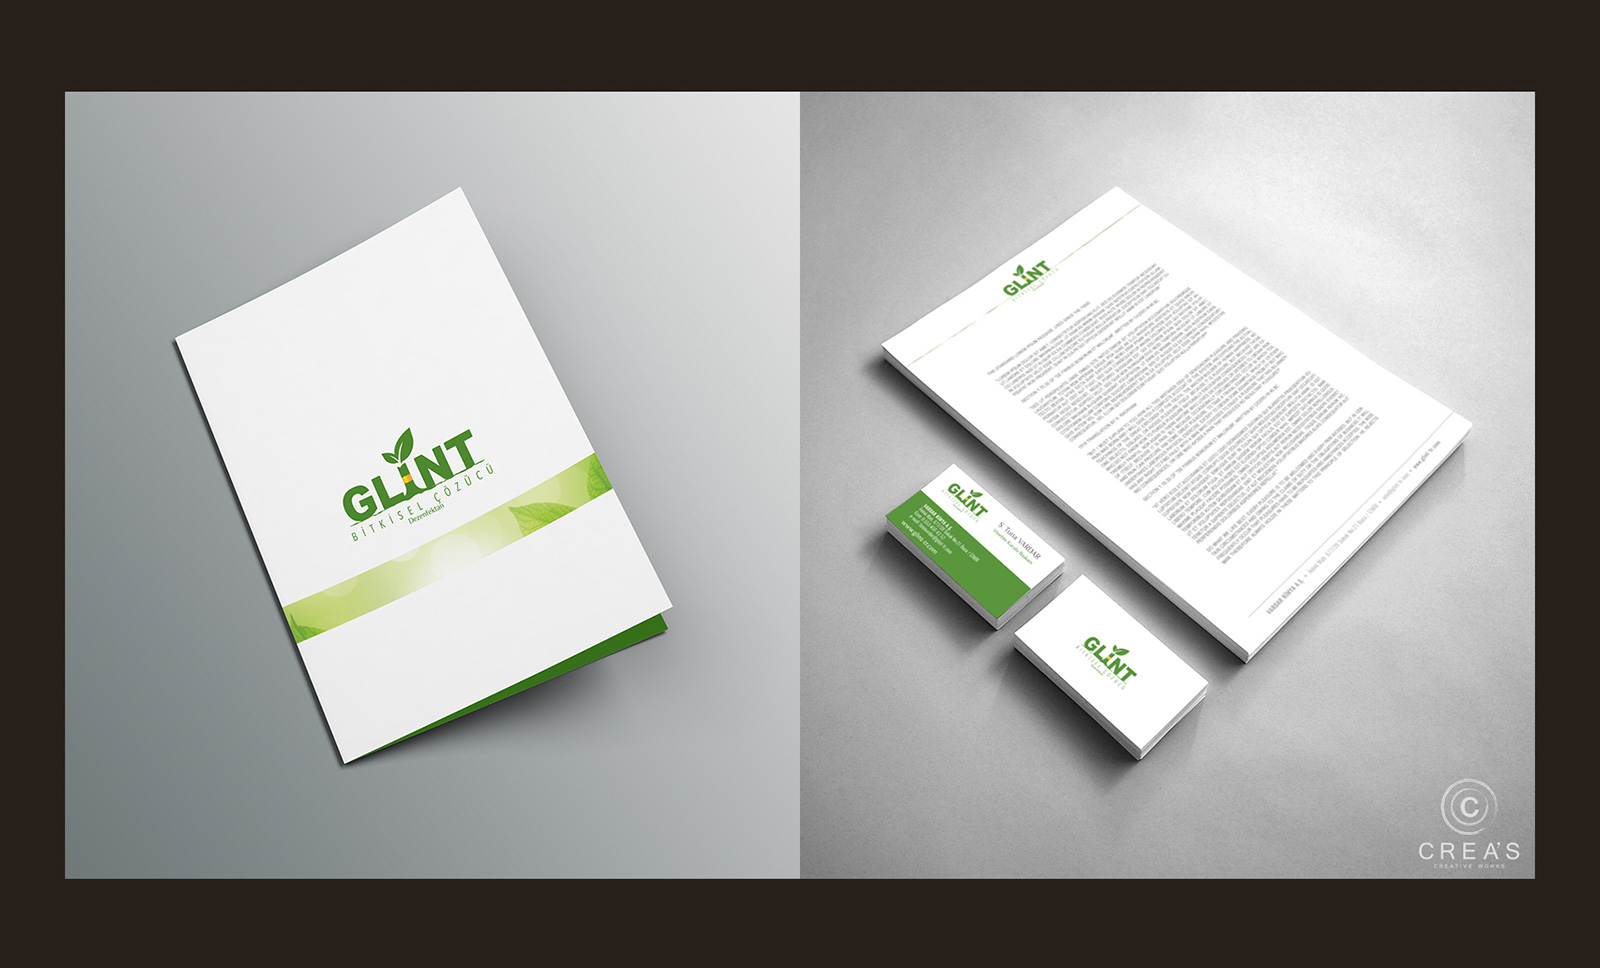 Creas Creative Tasarım ve Reklam Ajansı İzmir - Glint Logo ve Kurumsal Kimlik Tasarımı